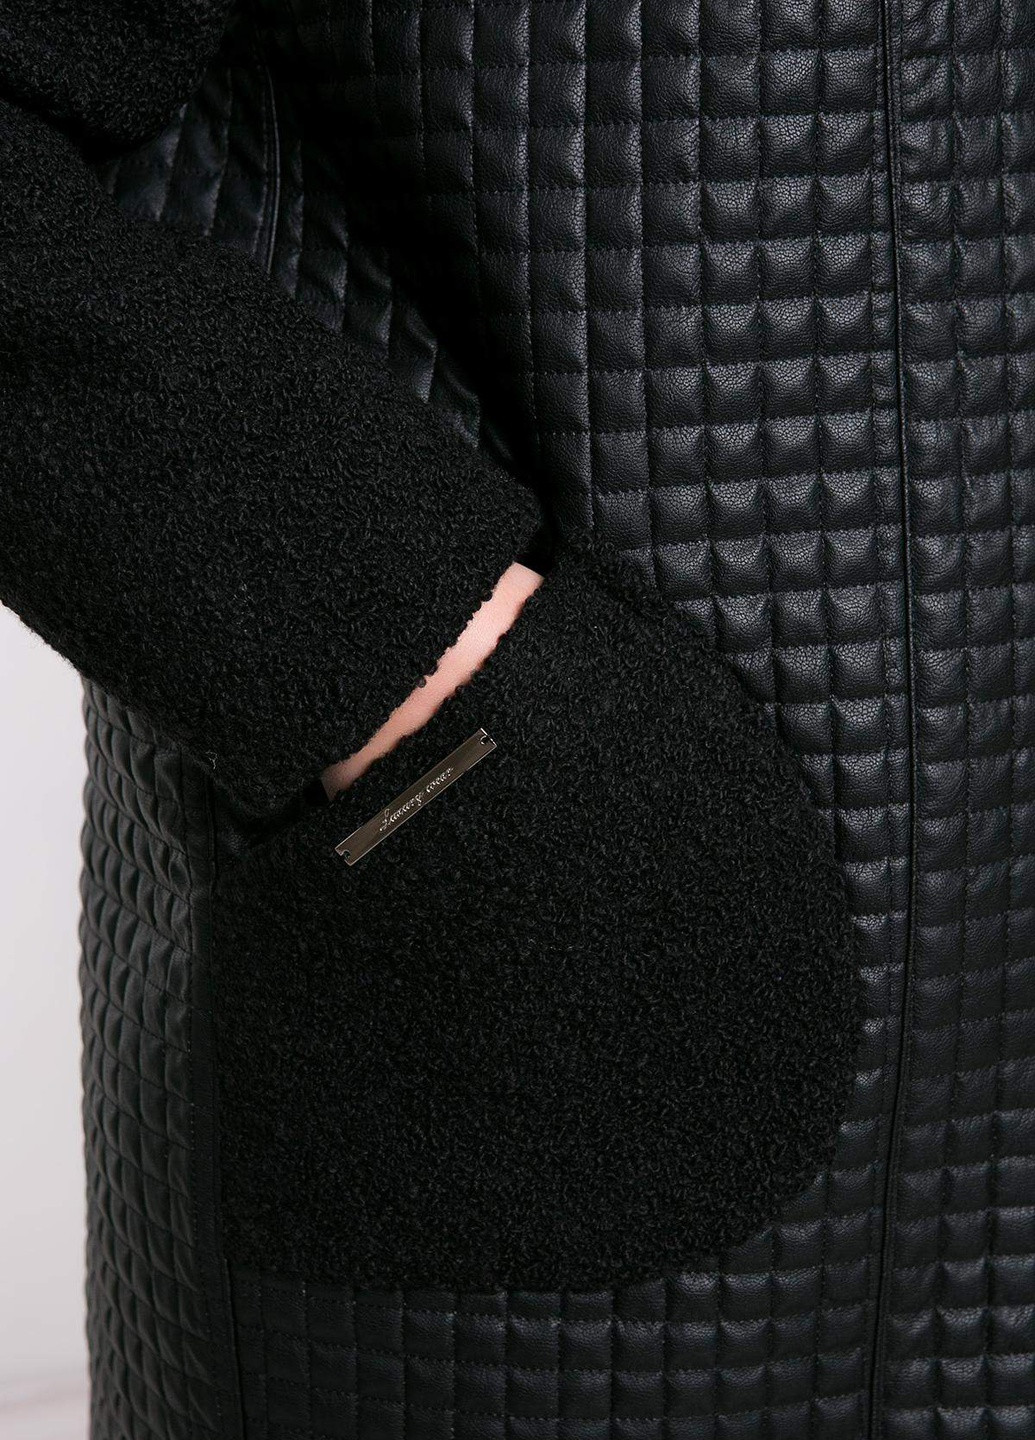 Черное демисезонное Пальто из стеганой искусственной кожи (квадрат) ЛУСИЯ черное Tatiana